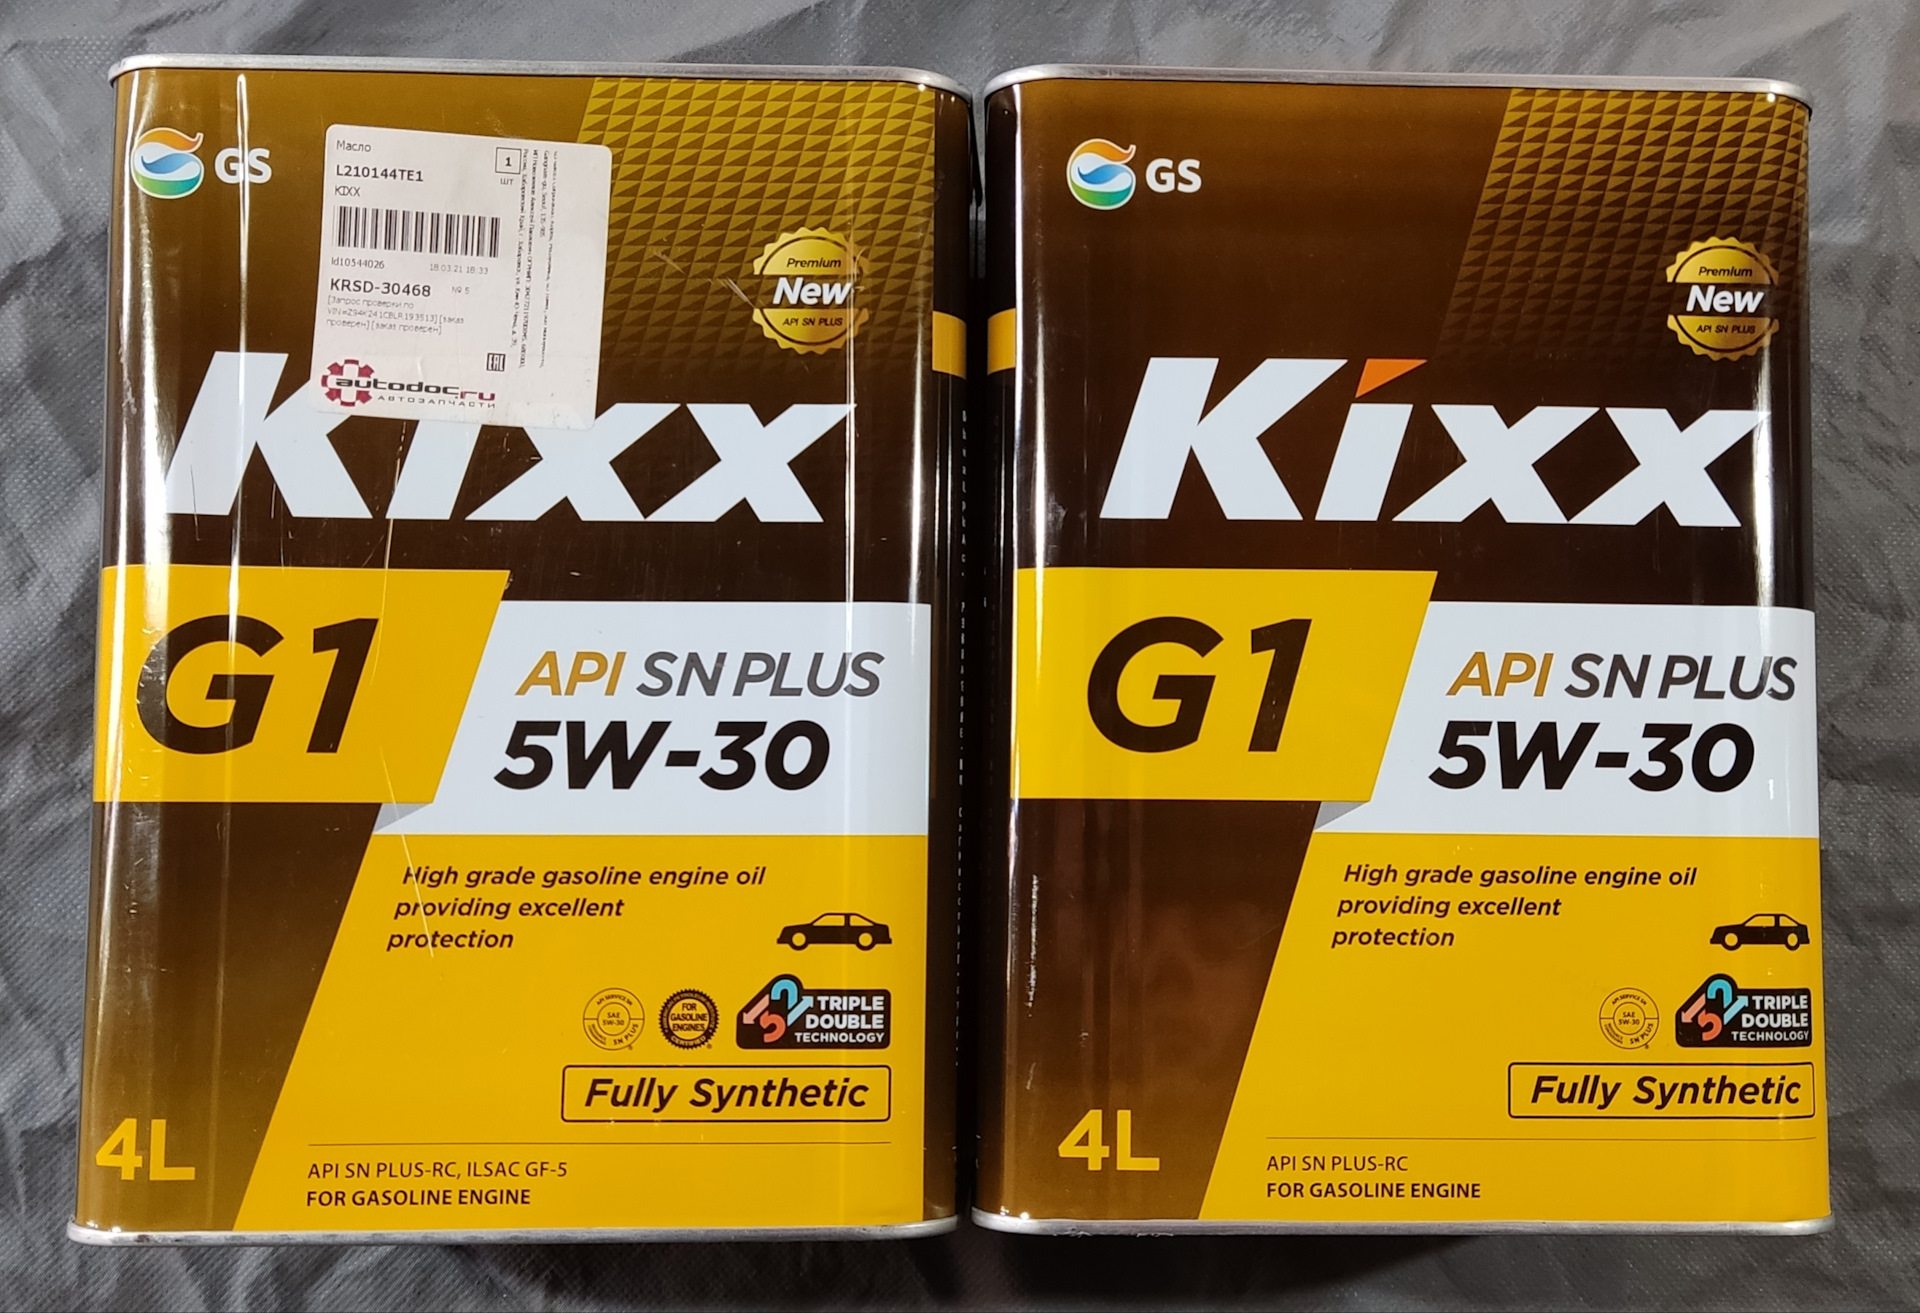 Токояма масло 5w30. Kixx g1 SN Plus 5w-30. Моторное масло Кикс 5w30 для Хендай Солярис. Kixx g1 5w30 SN Plus бочка. Кикс 5w40 в Солярис.